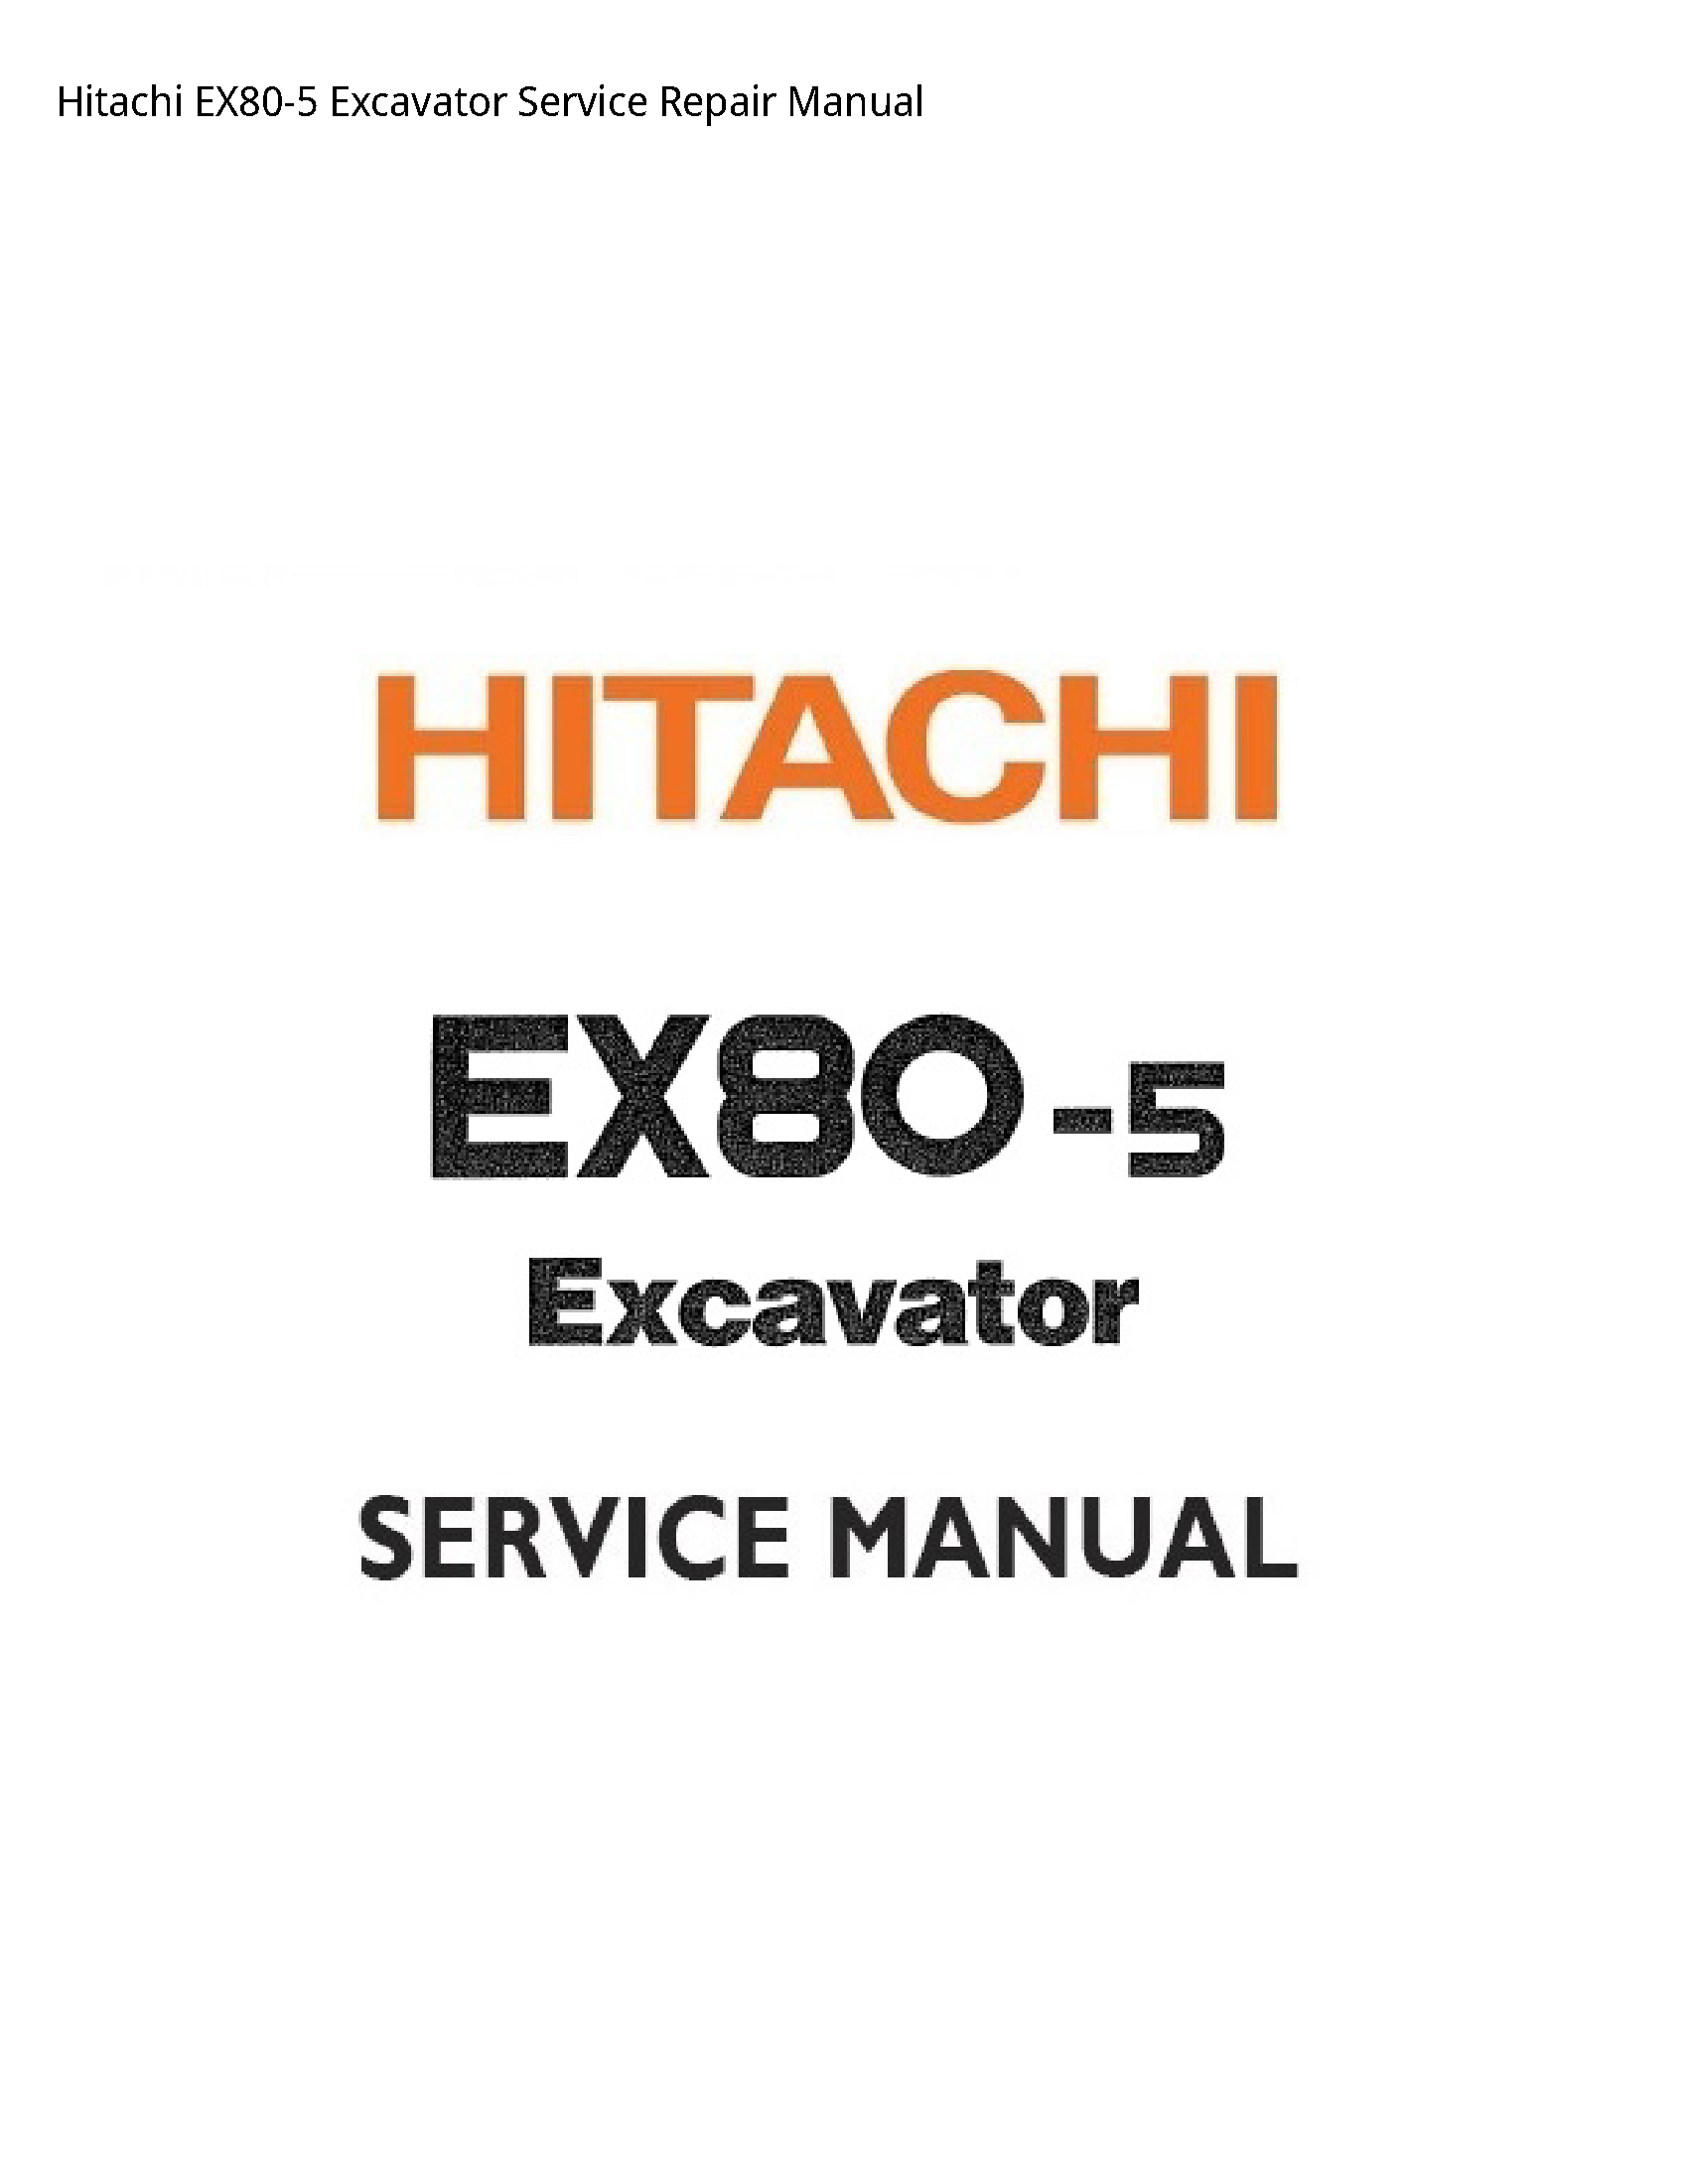 Hitachi EX80-5 Excavator manual